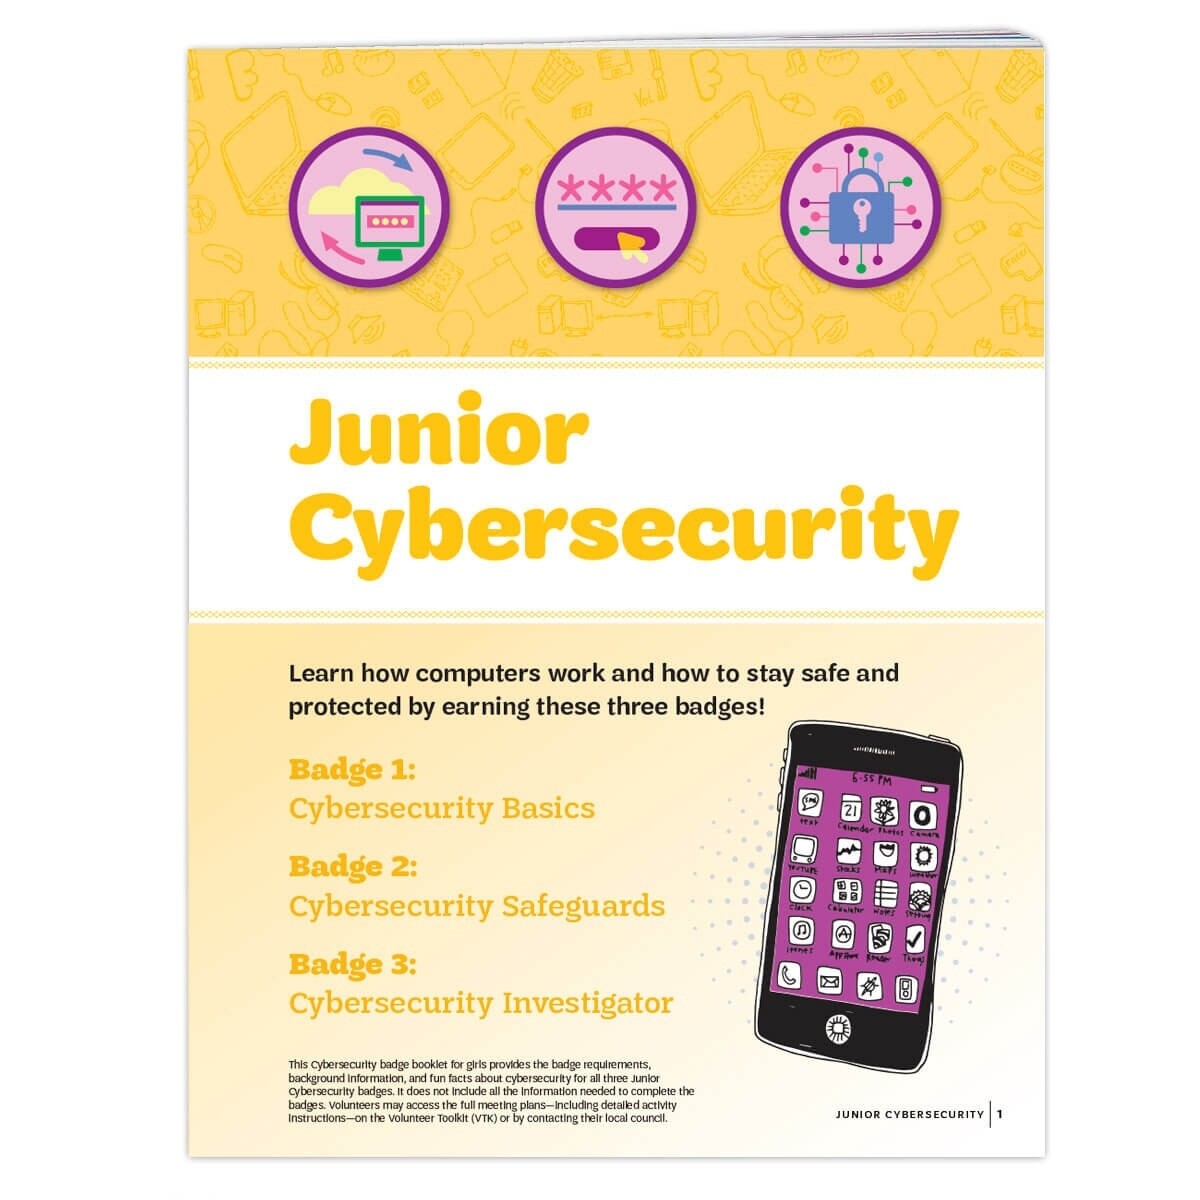 Junior Cybersecurity Badge Requirements